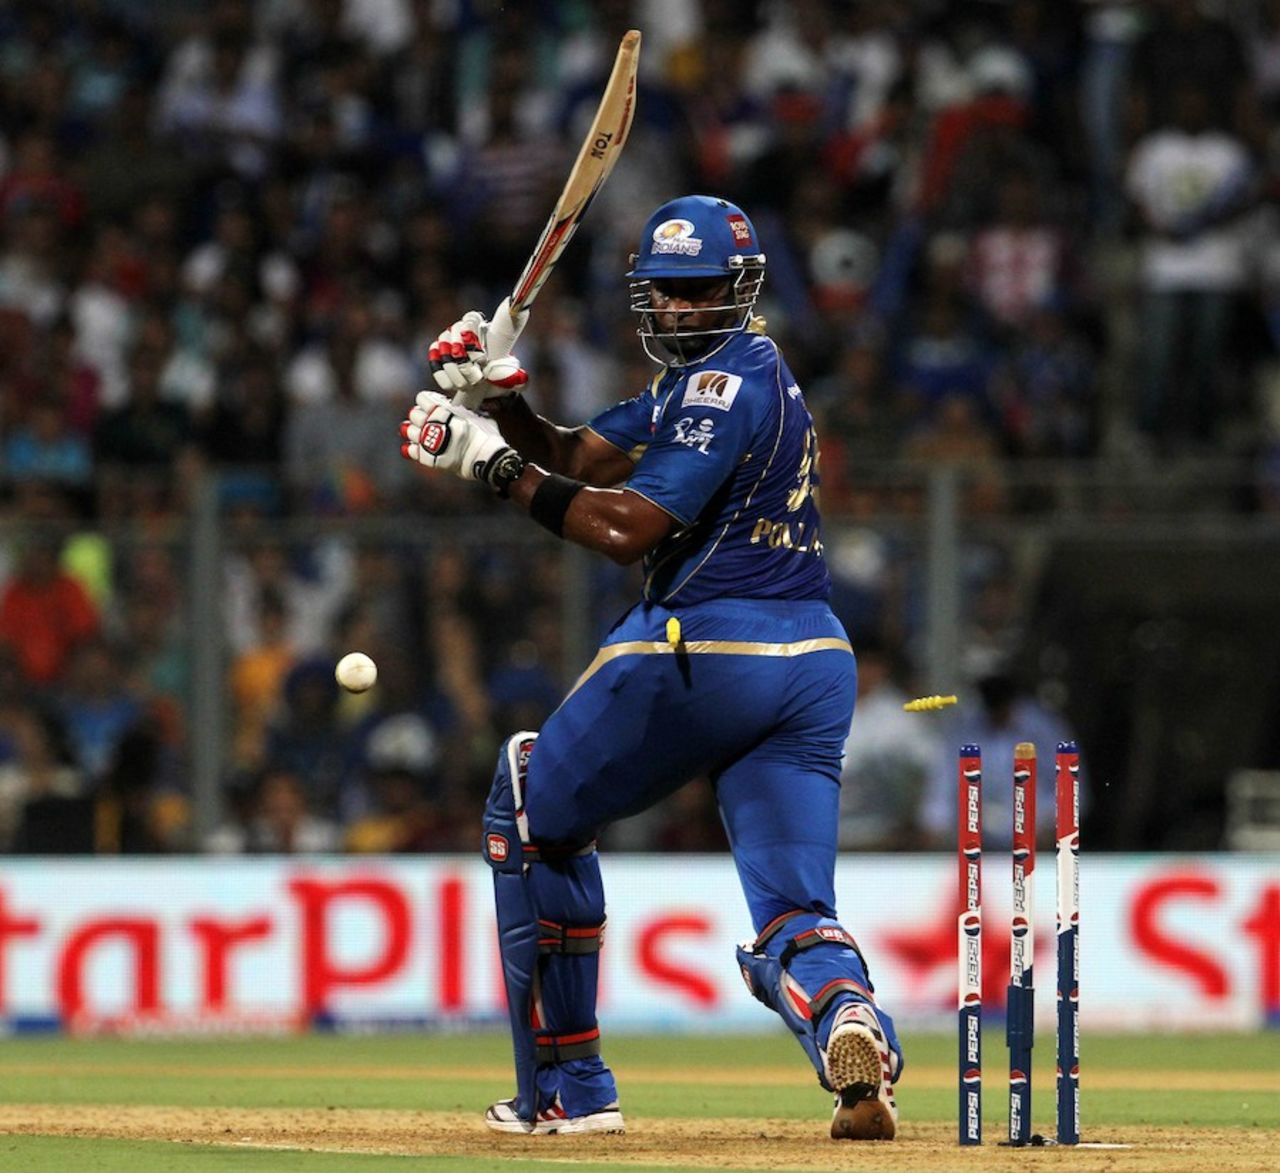 Kieron Pollard was bowled off a no-ball, Mumbai Indians v Kings XI Punjab, IPL 2013, Mumbai, April 29, 2013
